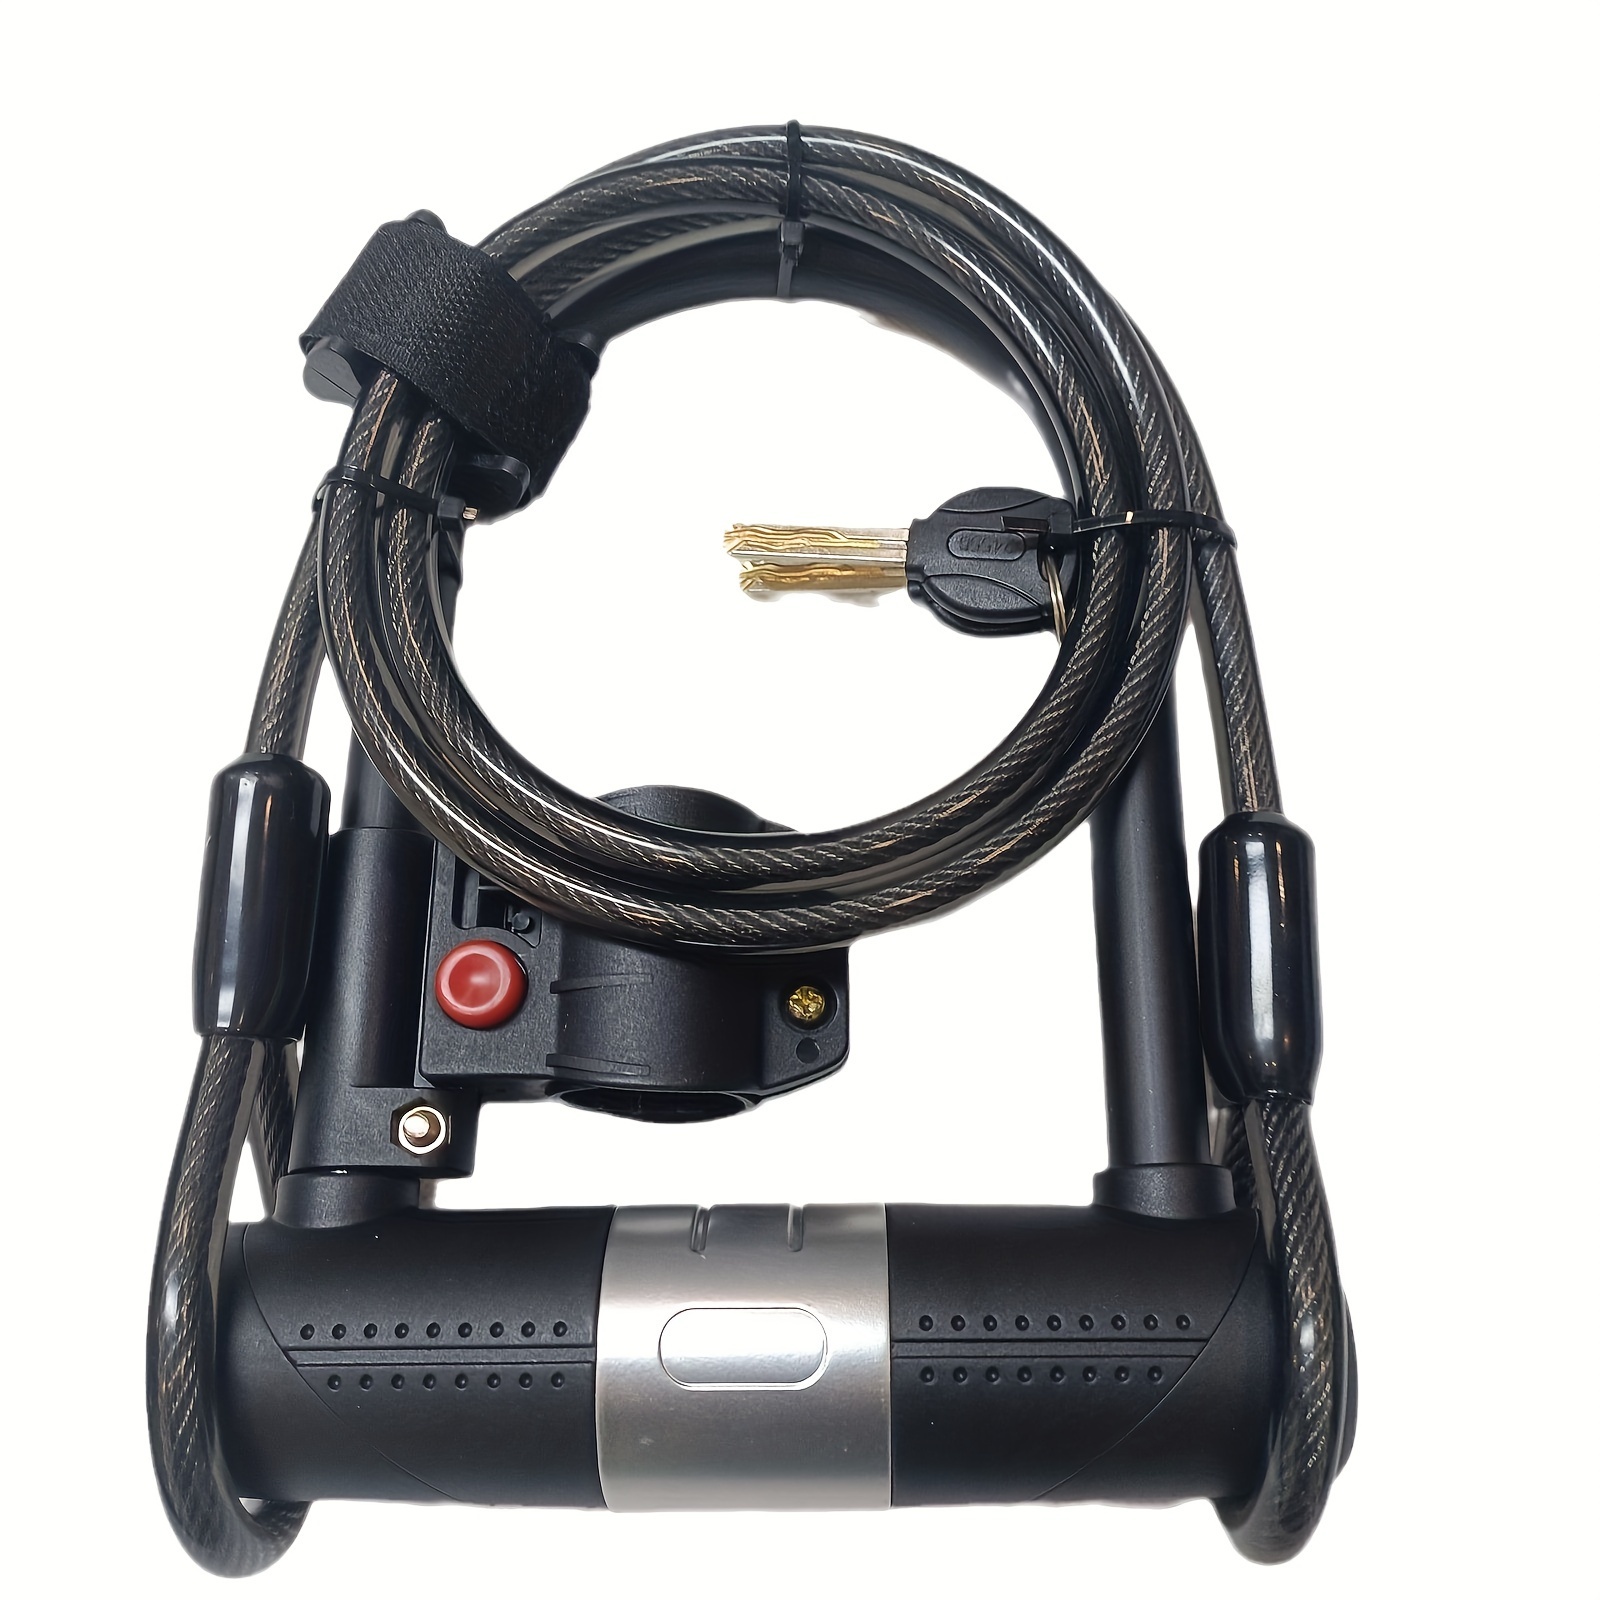  Candado en U para bicicleta, combinación de alta resistencia,  grillete de bloqueo en U, cable de seguridad de 4 pies de longitud con  soporte de montaje resistente y llave antirrobo para